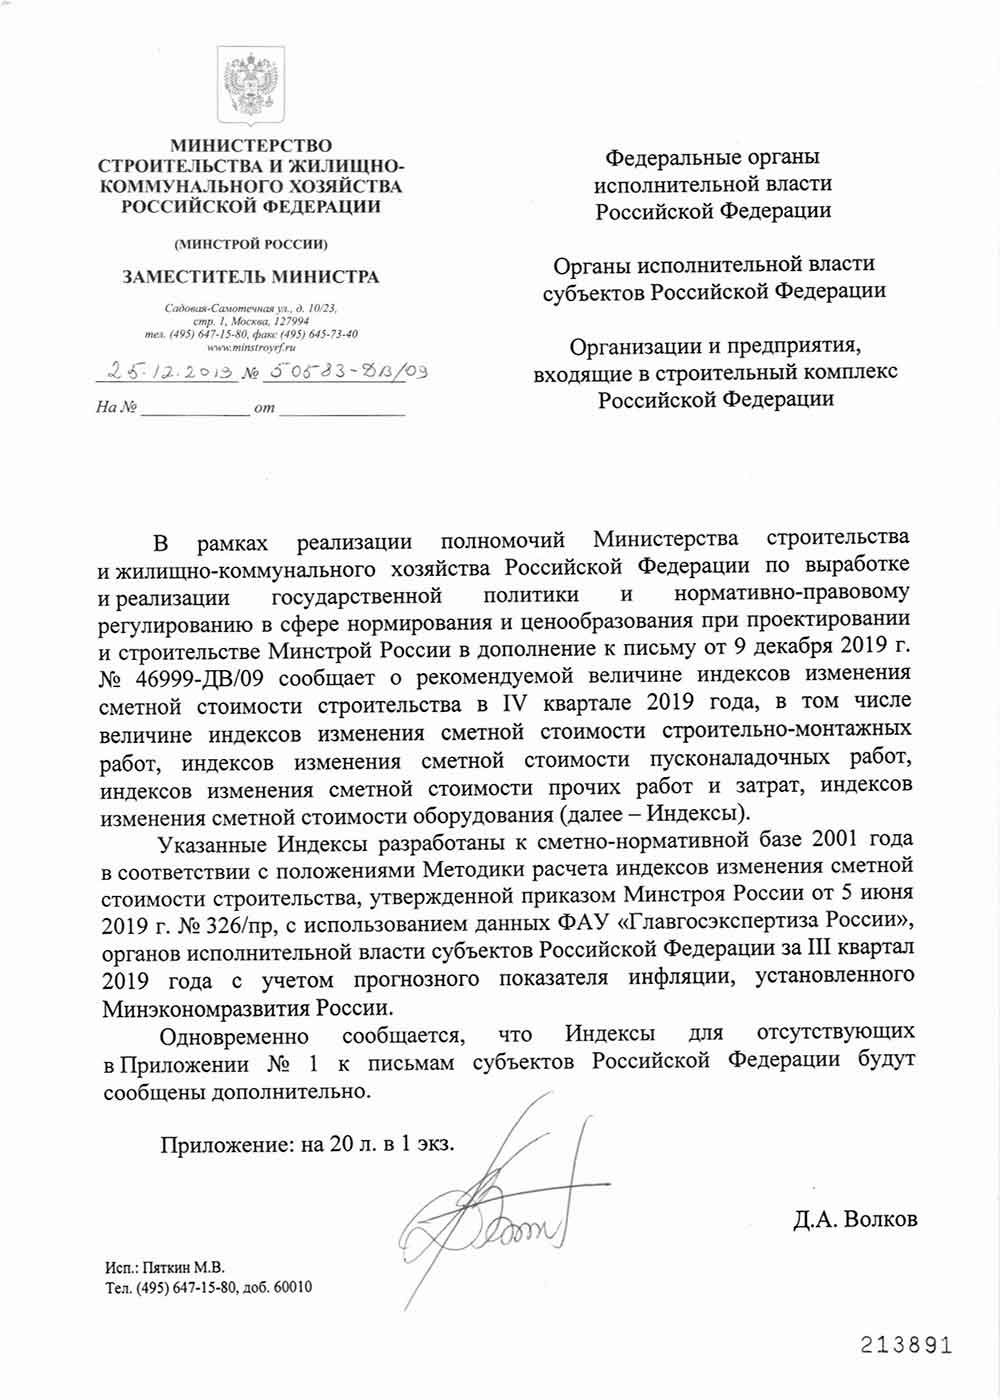 Письмо Минстроя РФ №50583-ДВ/09 от 25.12.2019 г.